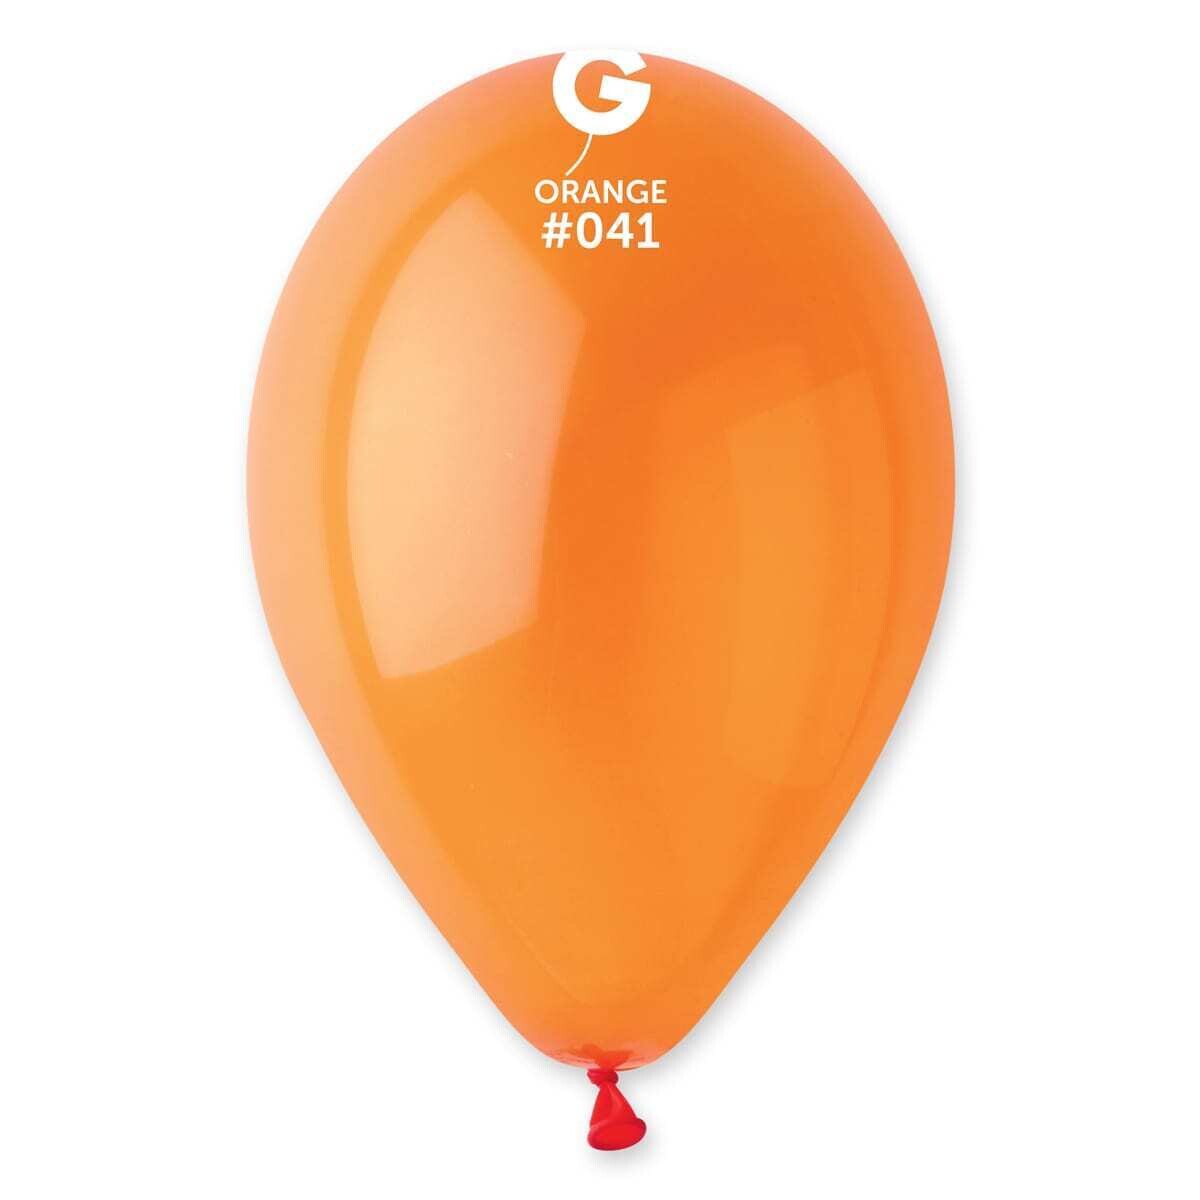 G110: #041 Orange 114102 Crystal Color 12 in